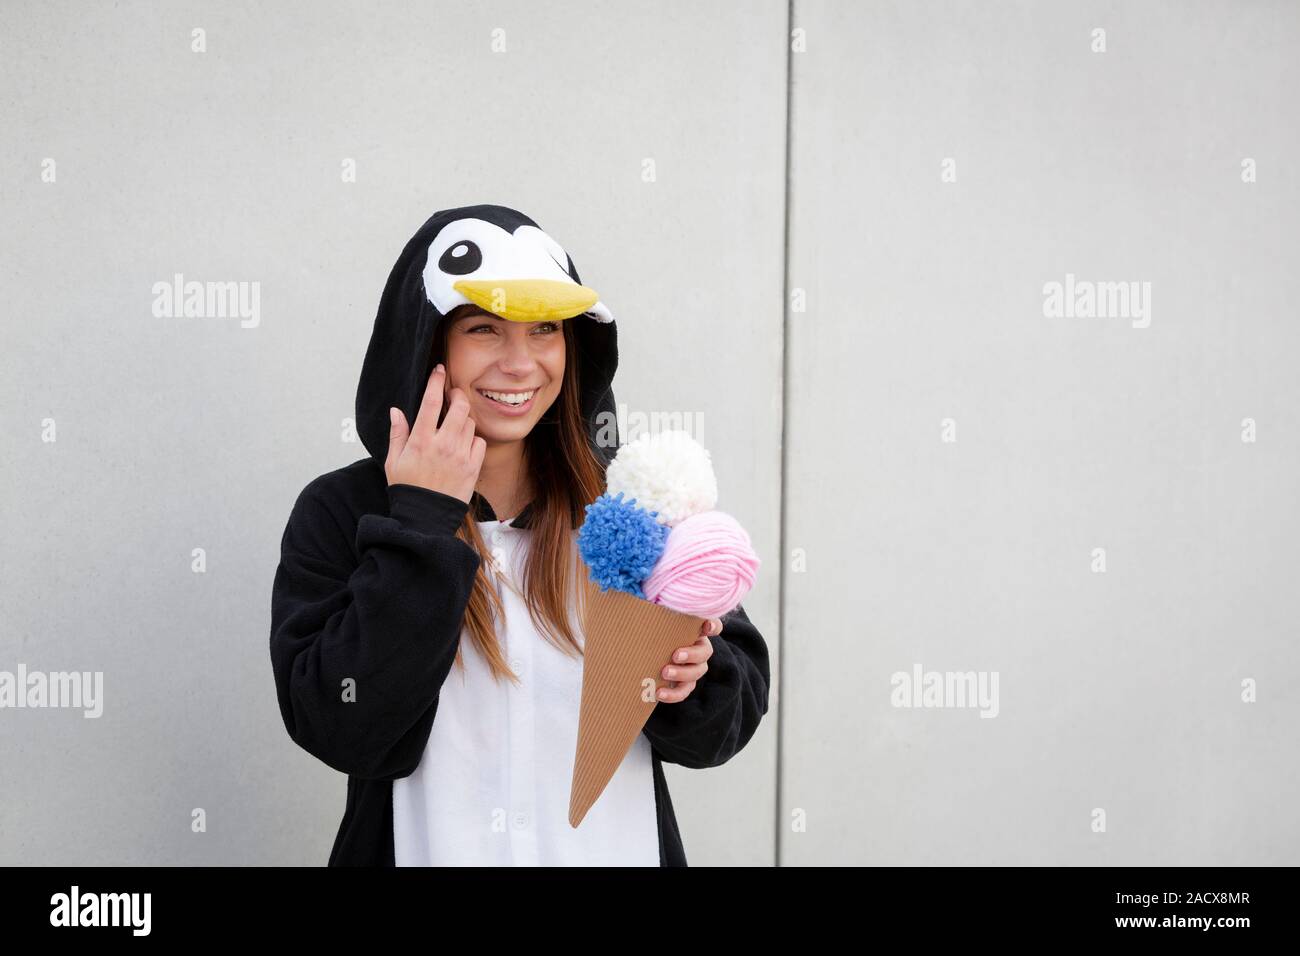 Schöne, junge Frau in Pinguin Kostüm ist Essen deco Eis in der Betonwand  Stockfotografie - Alamy